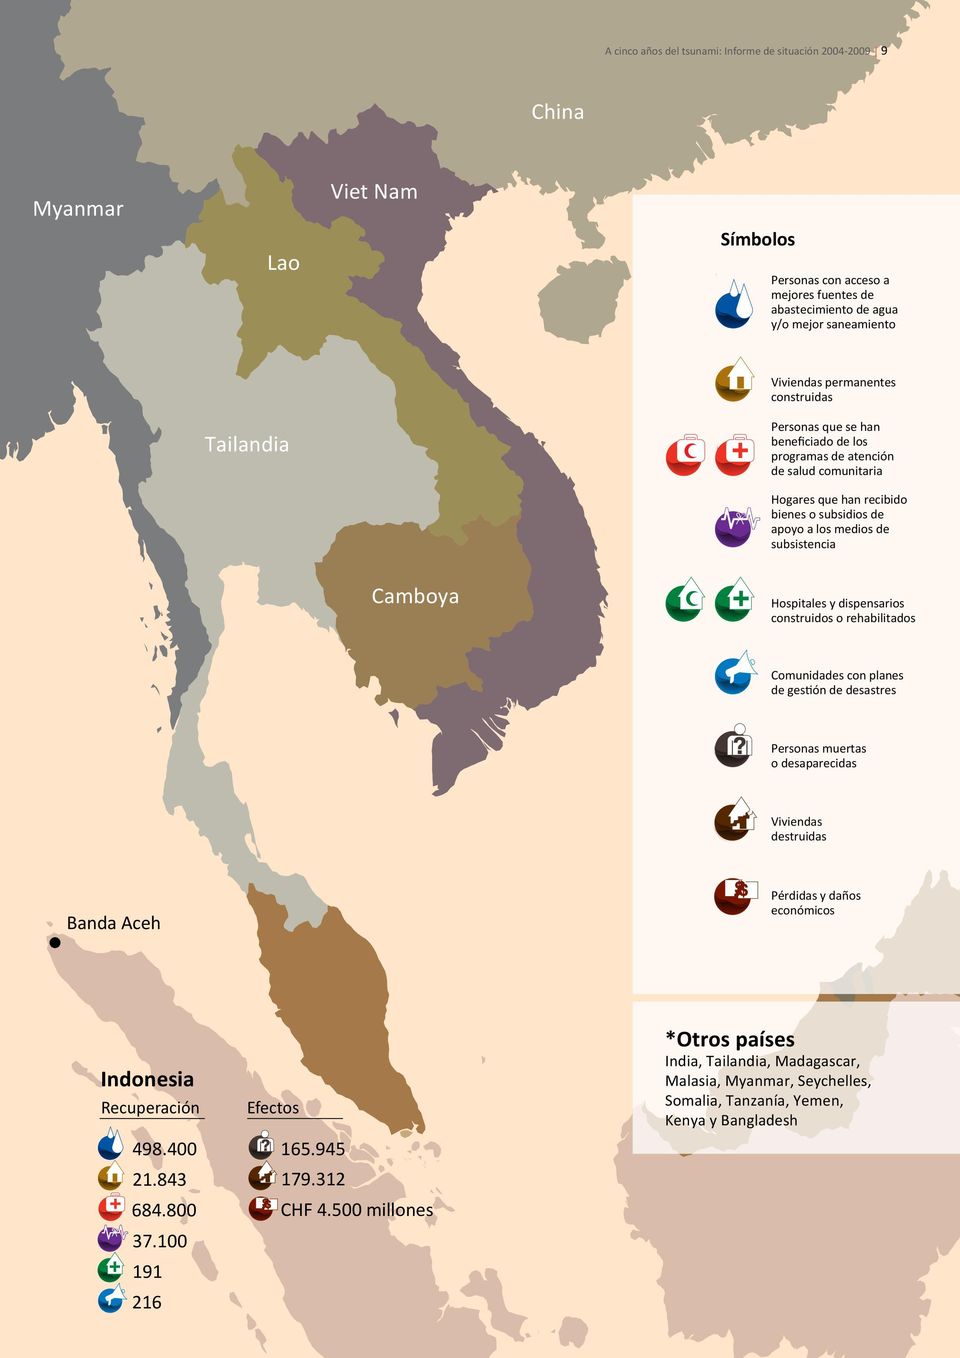 Camboya Hospitales y dispensarios construidos o rehabilitados Comunidades con planes de gestión de desastres Personas muertas o desaparecidas Viviendas destruidas Banda Aceh Pérdidas y daños